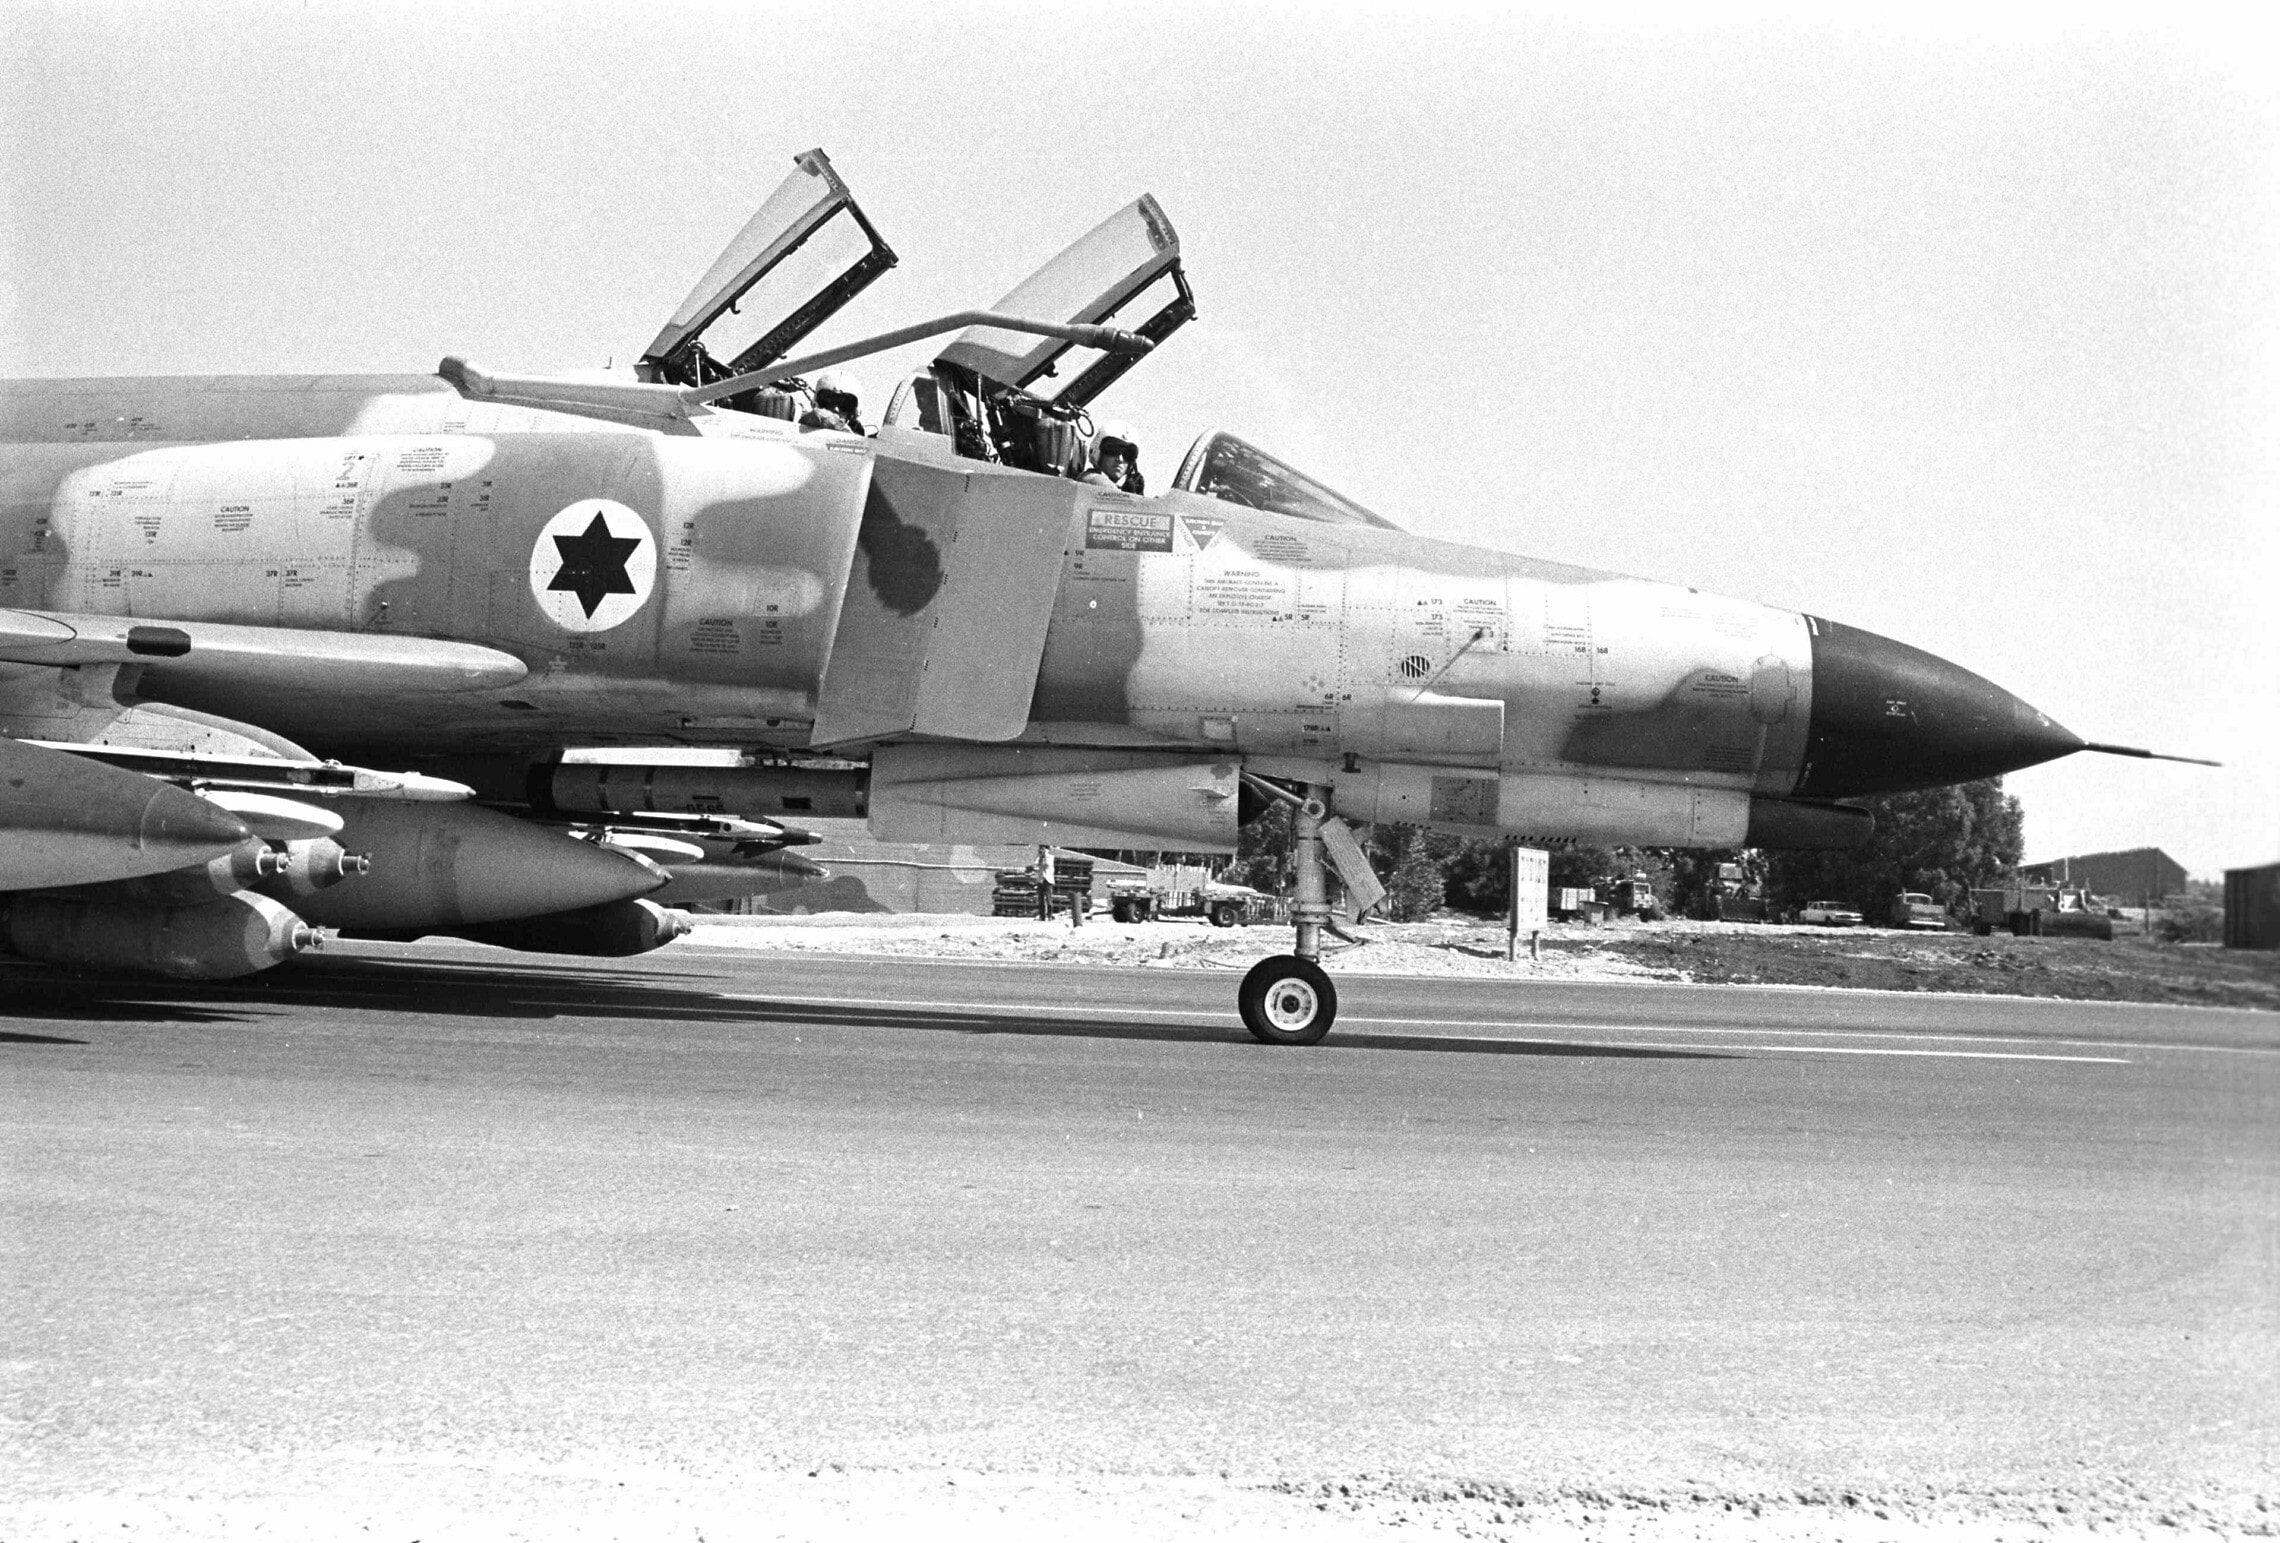 מטוס קרב מדגם &quot;פנטום&quot; חמוש לתקיפת מטרות קרקע בפצצות ש&quot;כ (שימוש כללי) בבסיס חיל האוויר בגולן, 6 באוקטובר 1973 (צילום: מיכאל אסטל, &quot;במחנה&quot;)